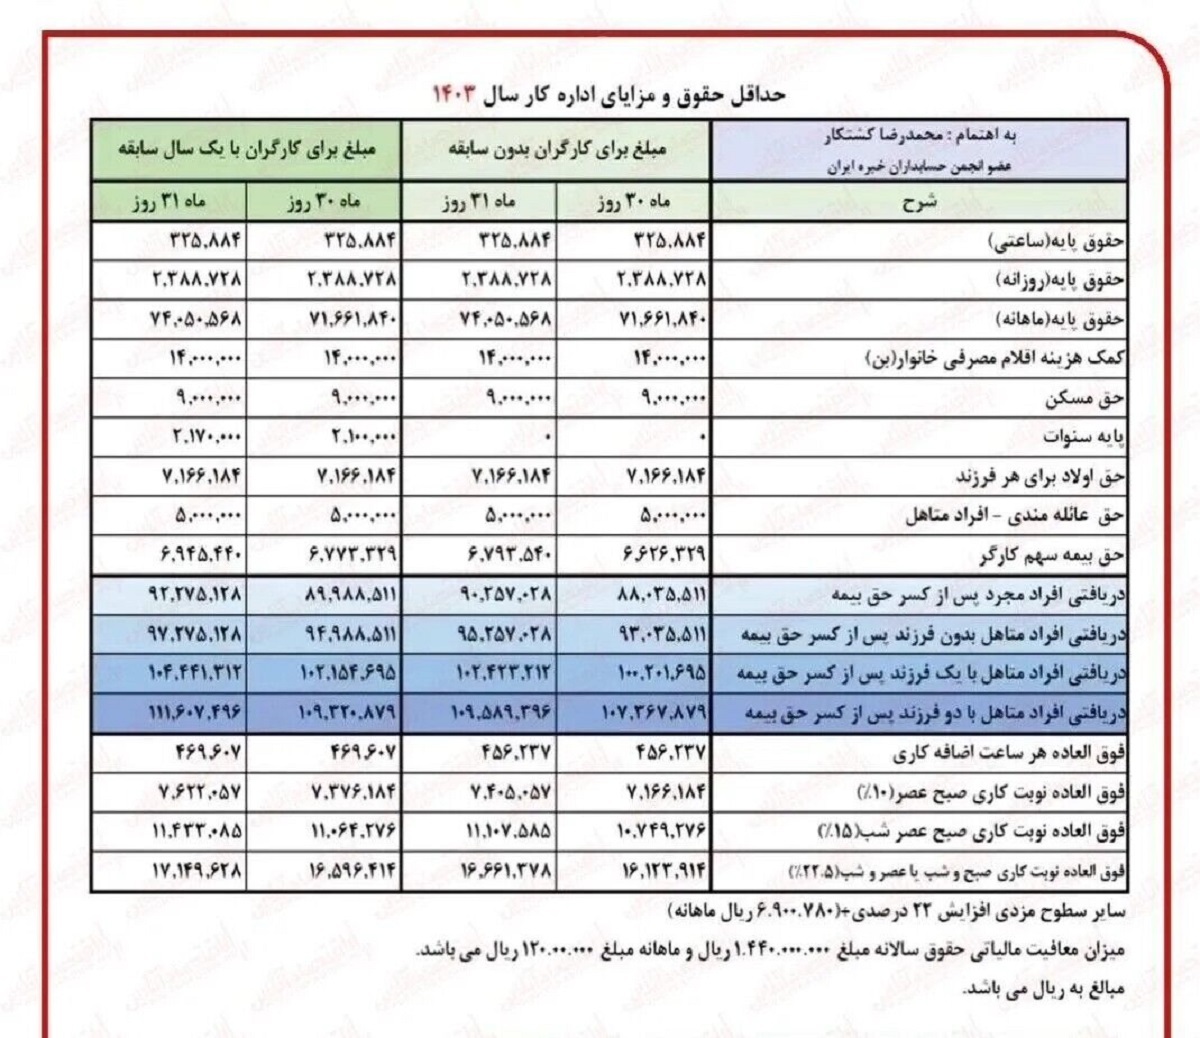 جدول محاسبه میزان مستمری مددجویان کمیته امداد و بهزیستی